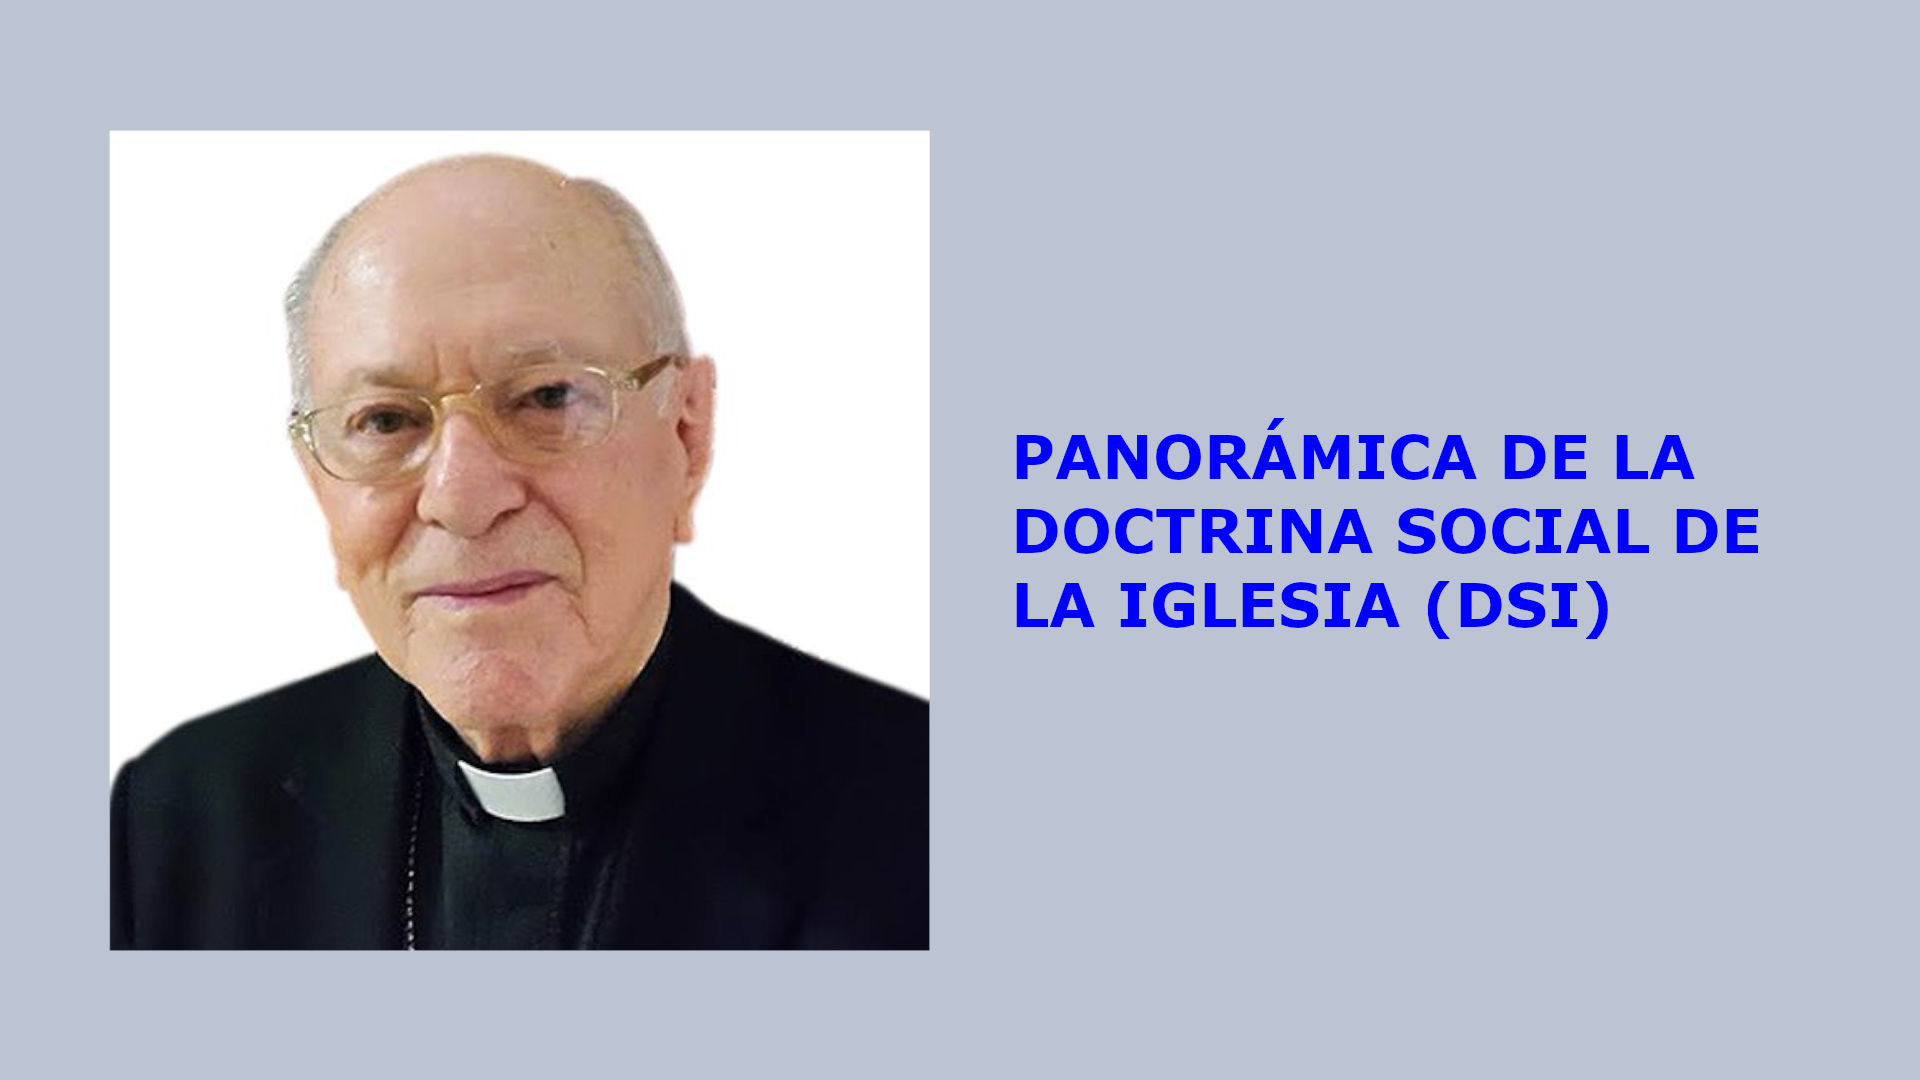 PANORÁMICA DE LA DOCTRINA SOCIAL DE LA IGLESIA (DSI)